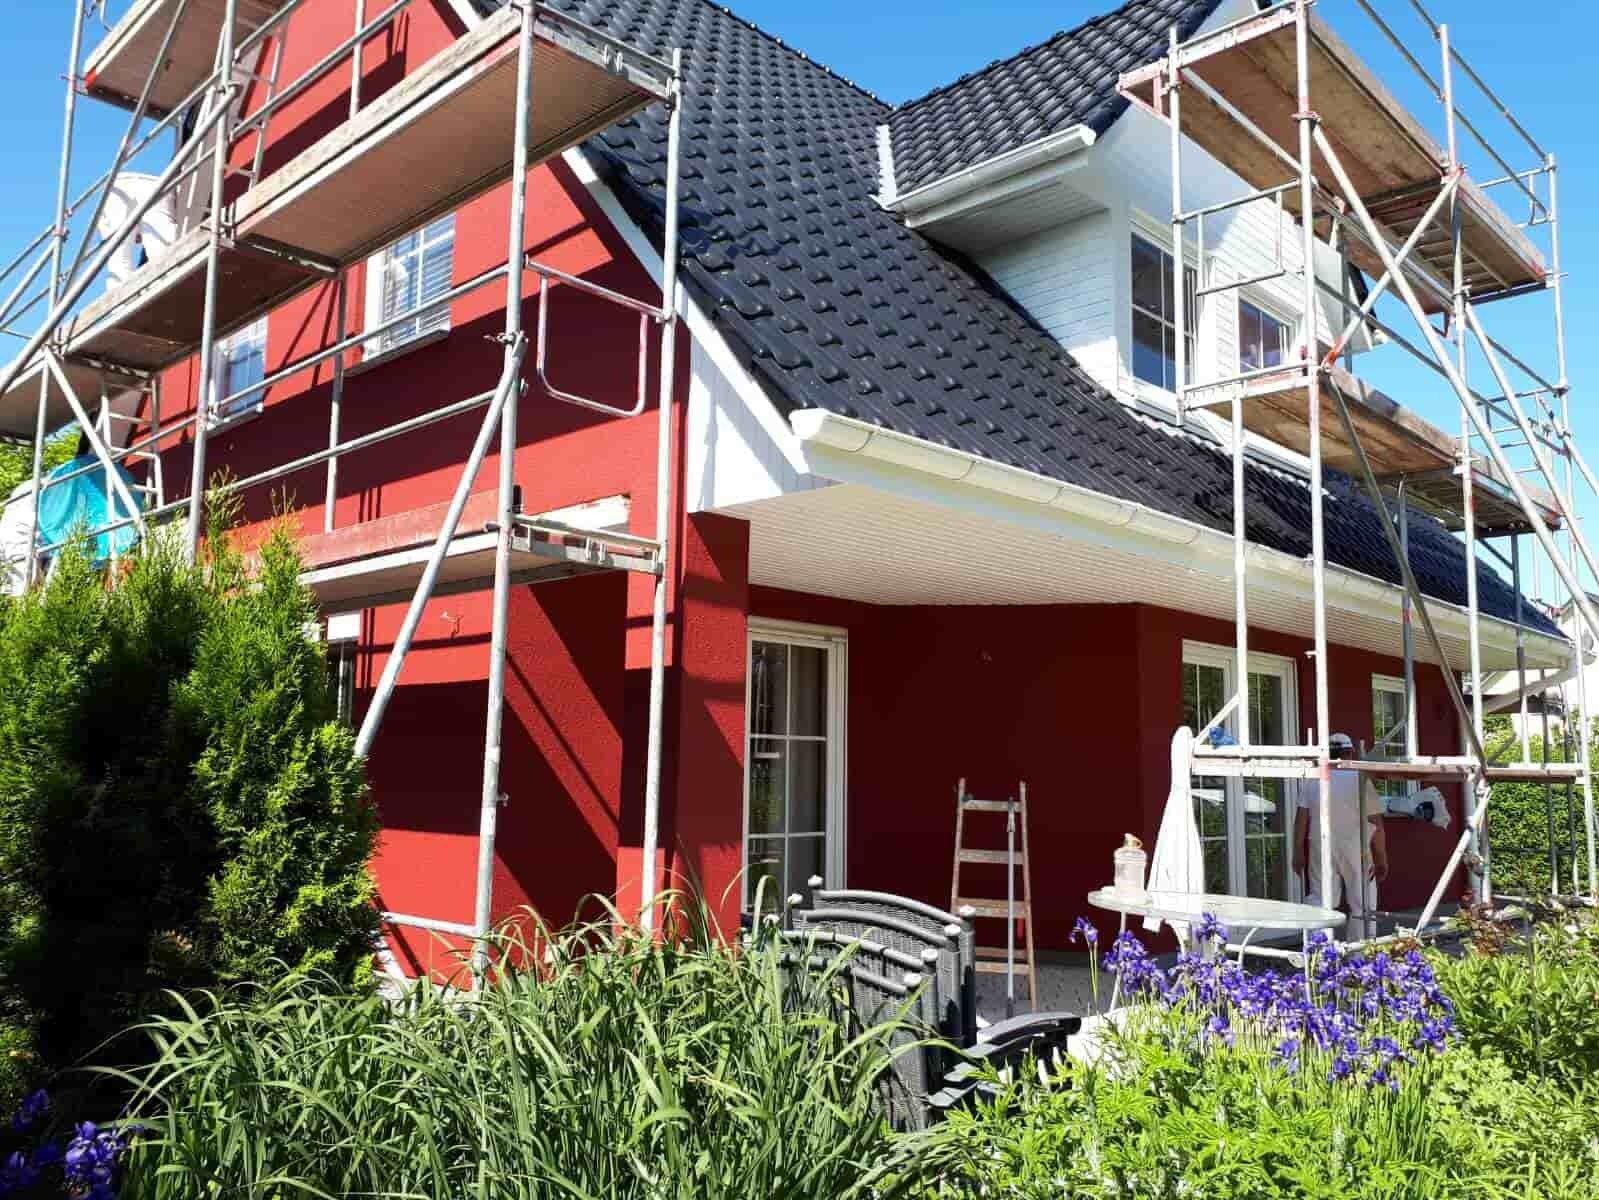 Fassade eines Einfamilienhauses mit rotem Anstrich in Rostock